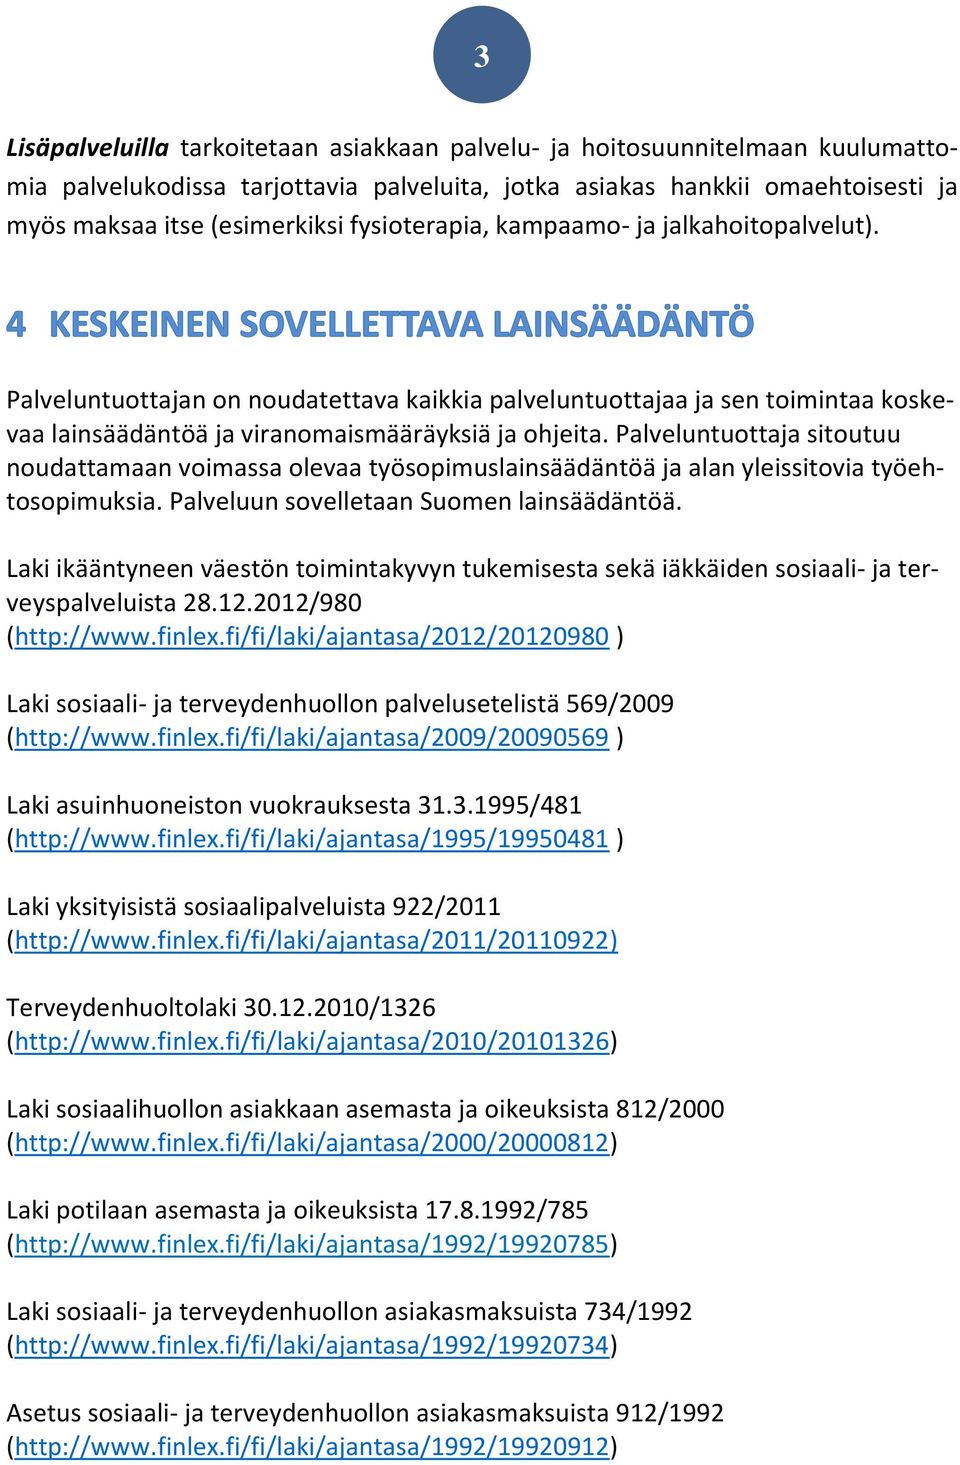 Palveluntuottaja sitoutuu noudattamaan voimassa olevaa työsopimuslainsäädäntöä ja alan yleissitovia työehtosopimuksia. Palveluun sovelletaan Suomen lainsäädäntöä.